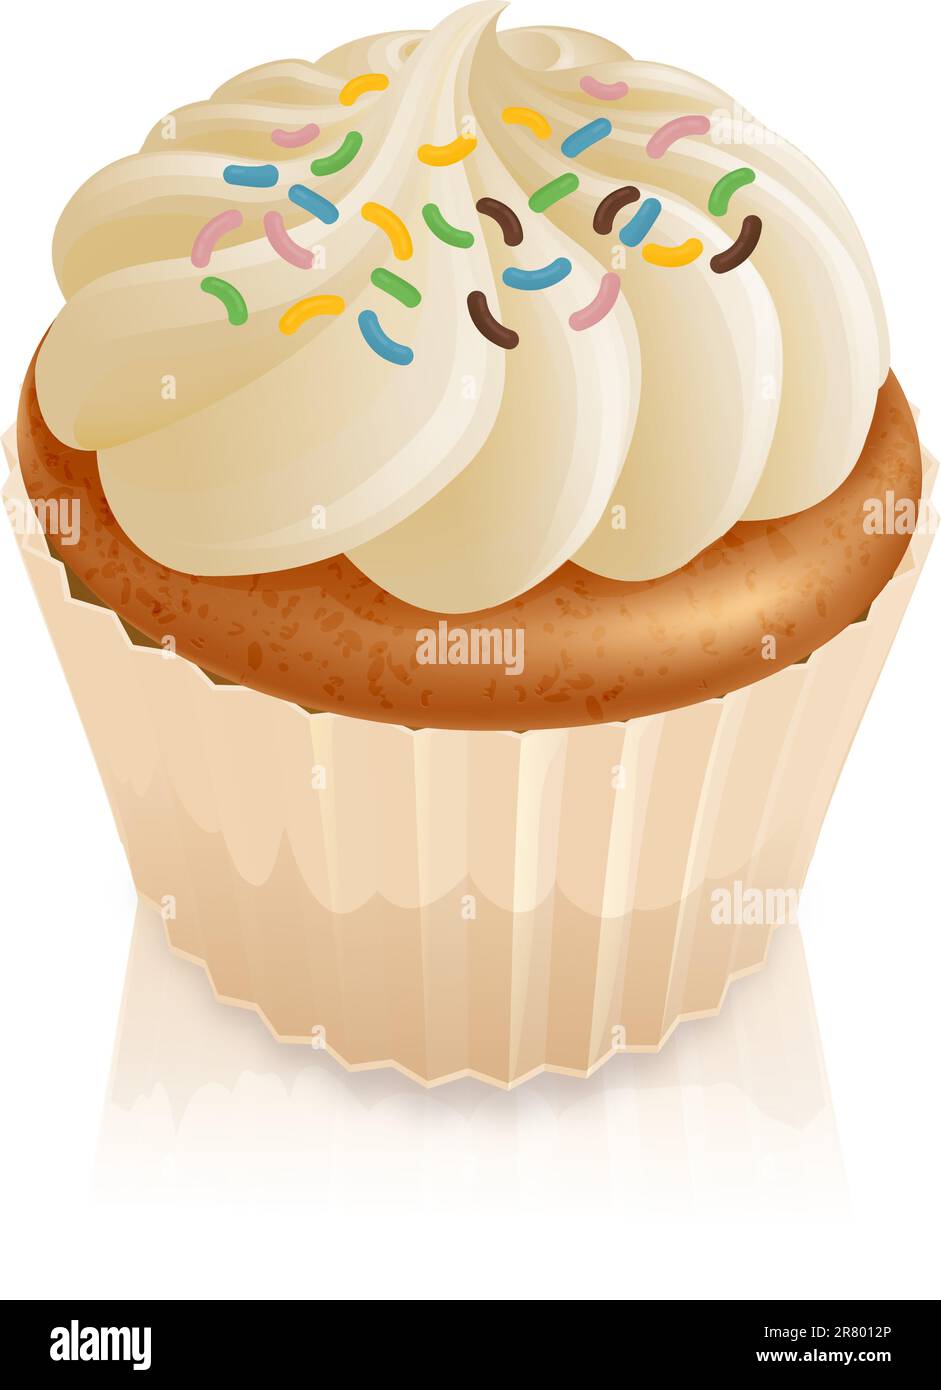 Abbildung von einer Fee Kuchen Cupcake mit bunten Streuseln Stock Vektor